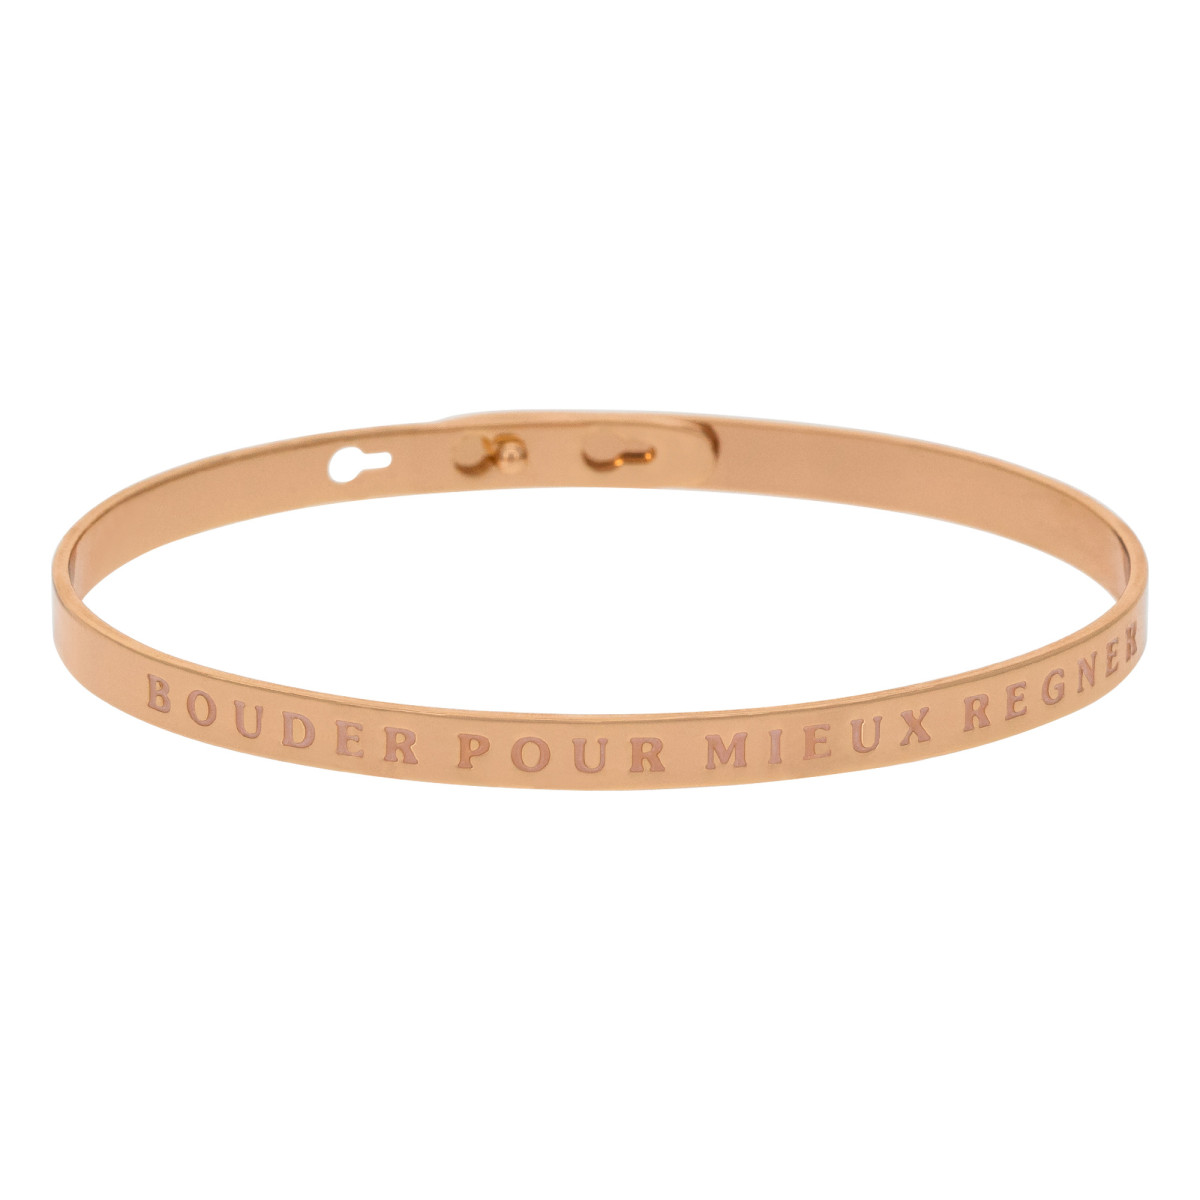 "BOUDER POUR MIEUX REGNER" bracelet jonc rosé à message